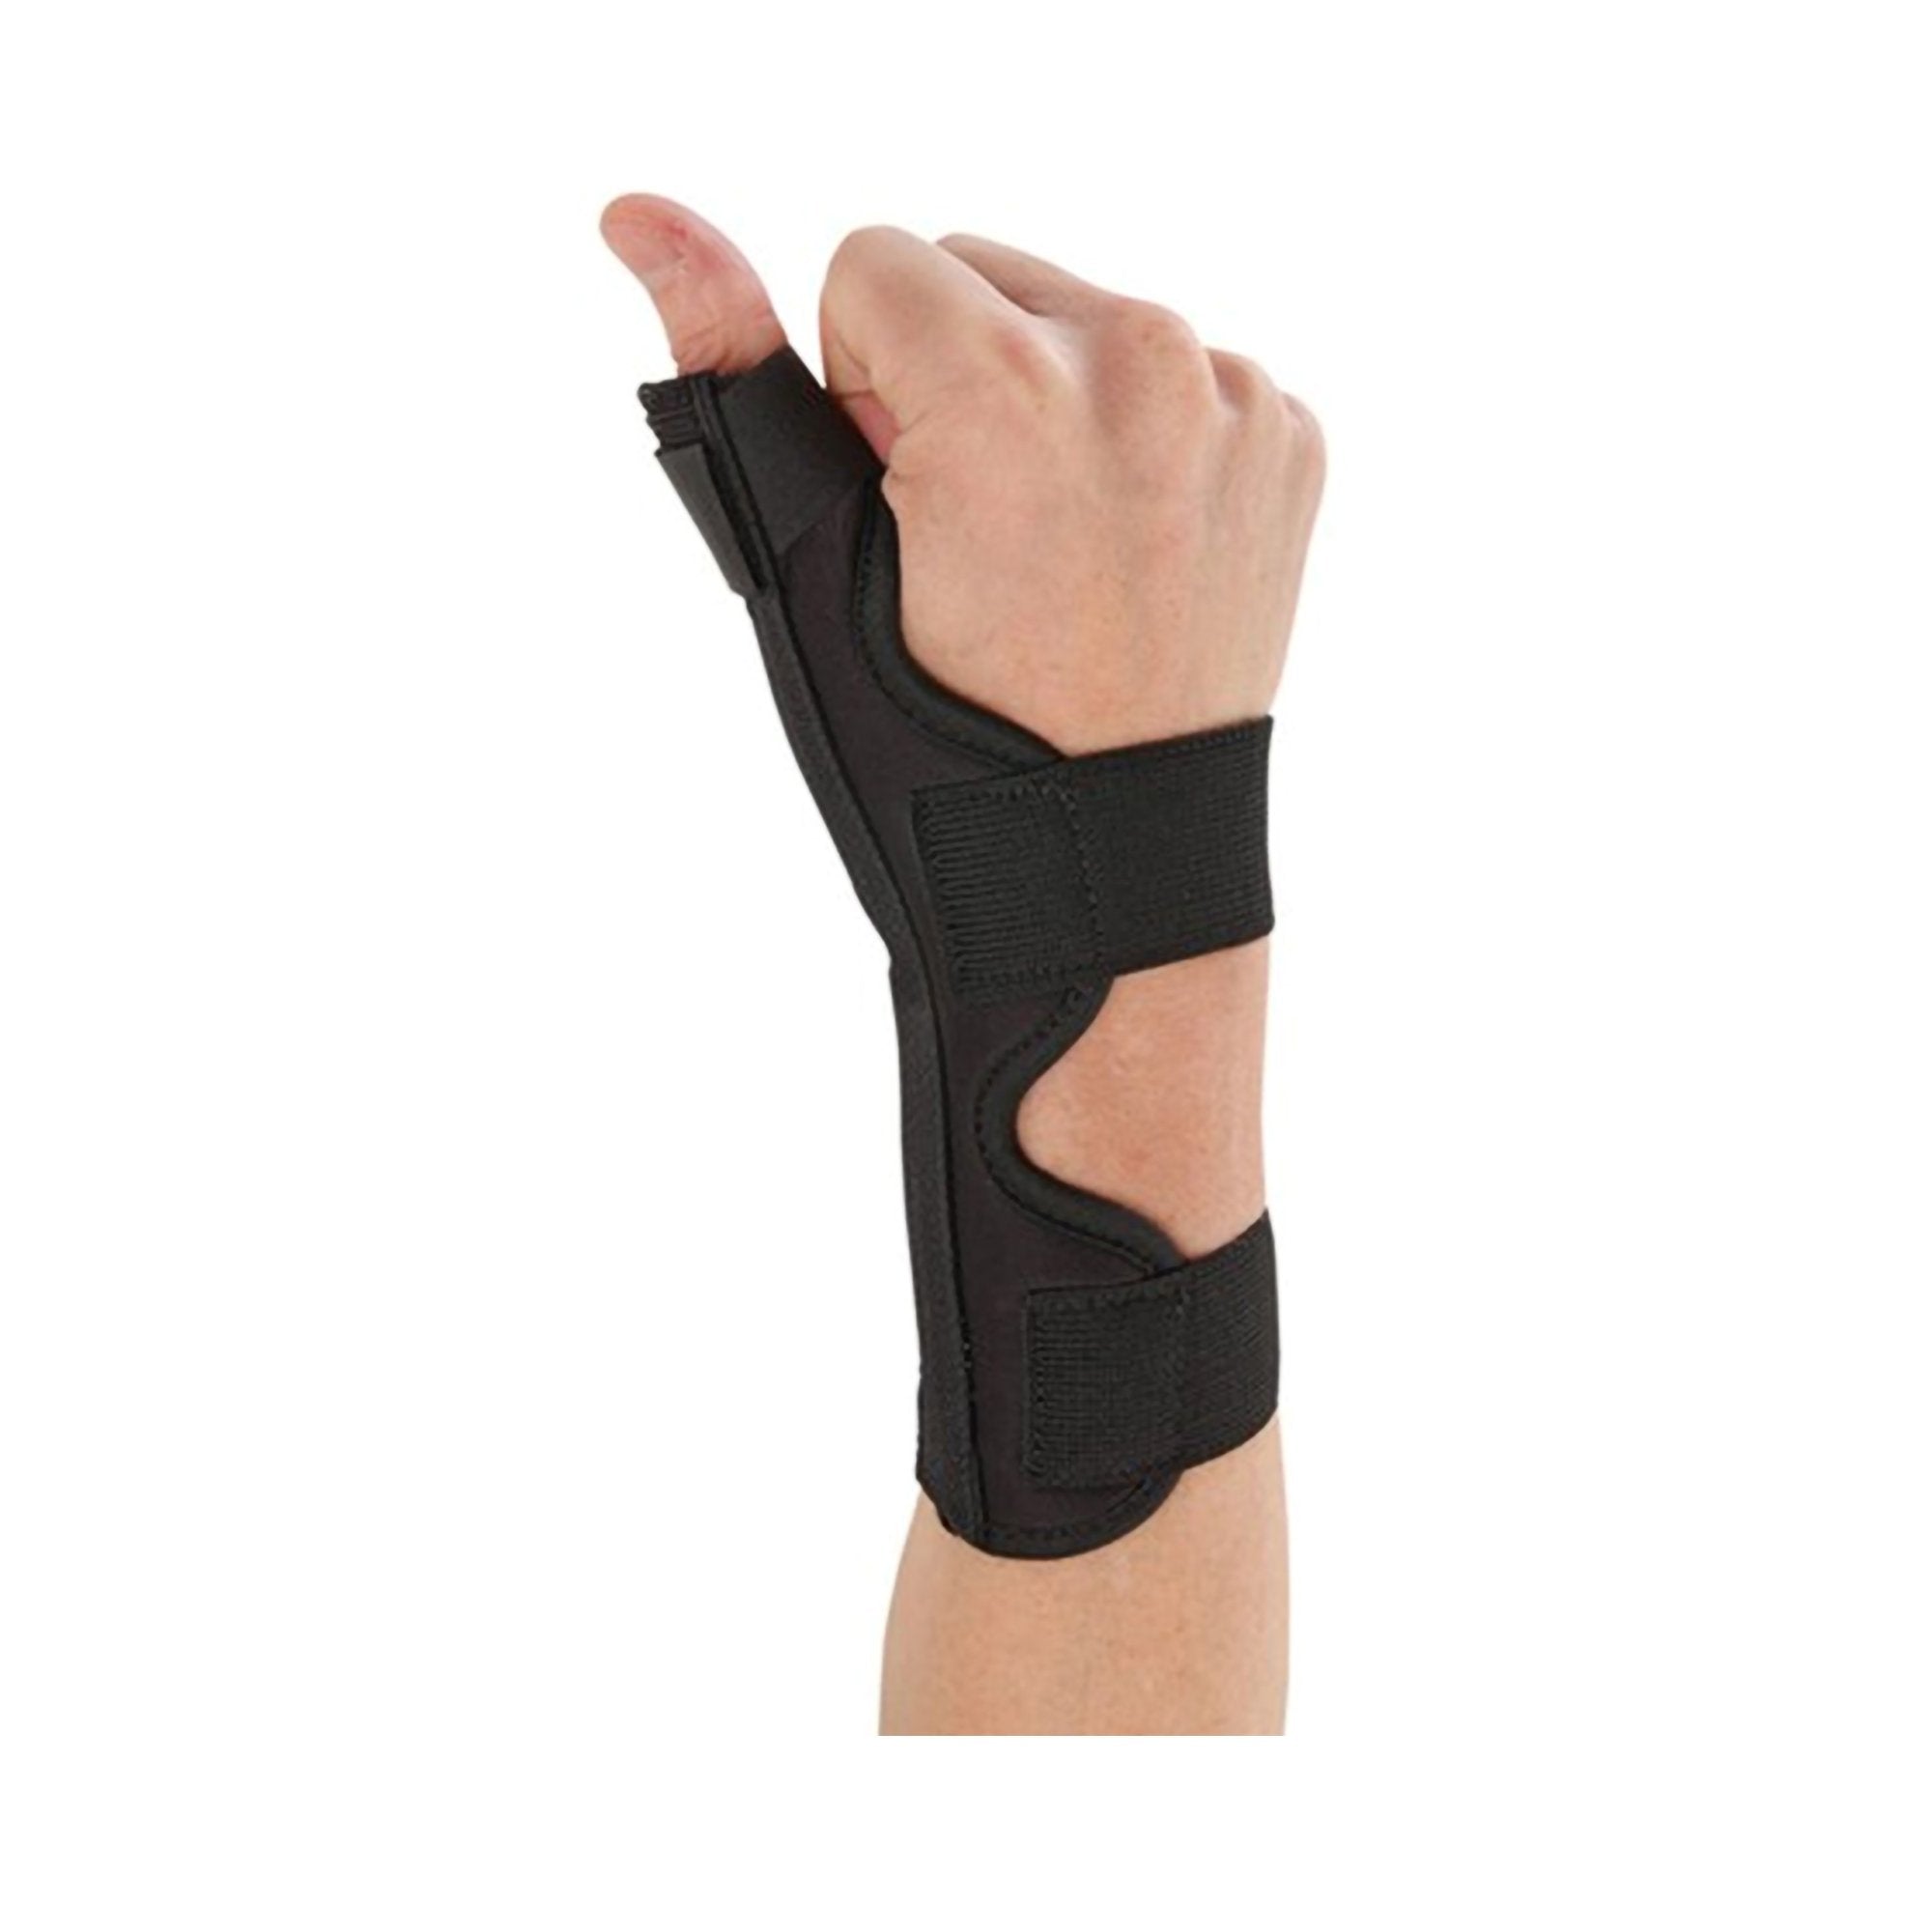 Ossur® Thumb Splint, One Size Fits Most (1 Unit)